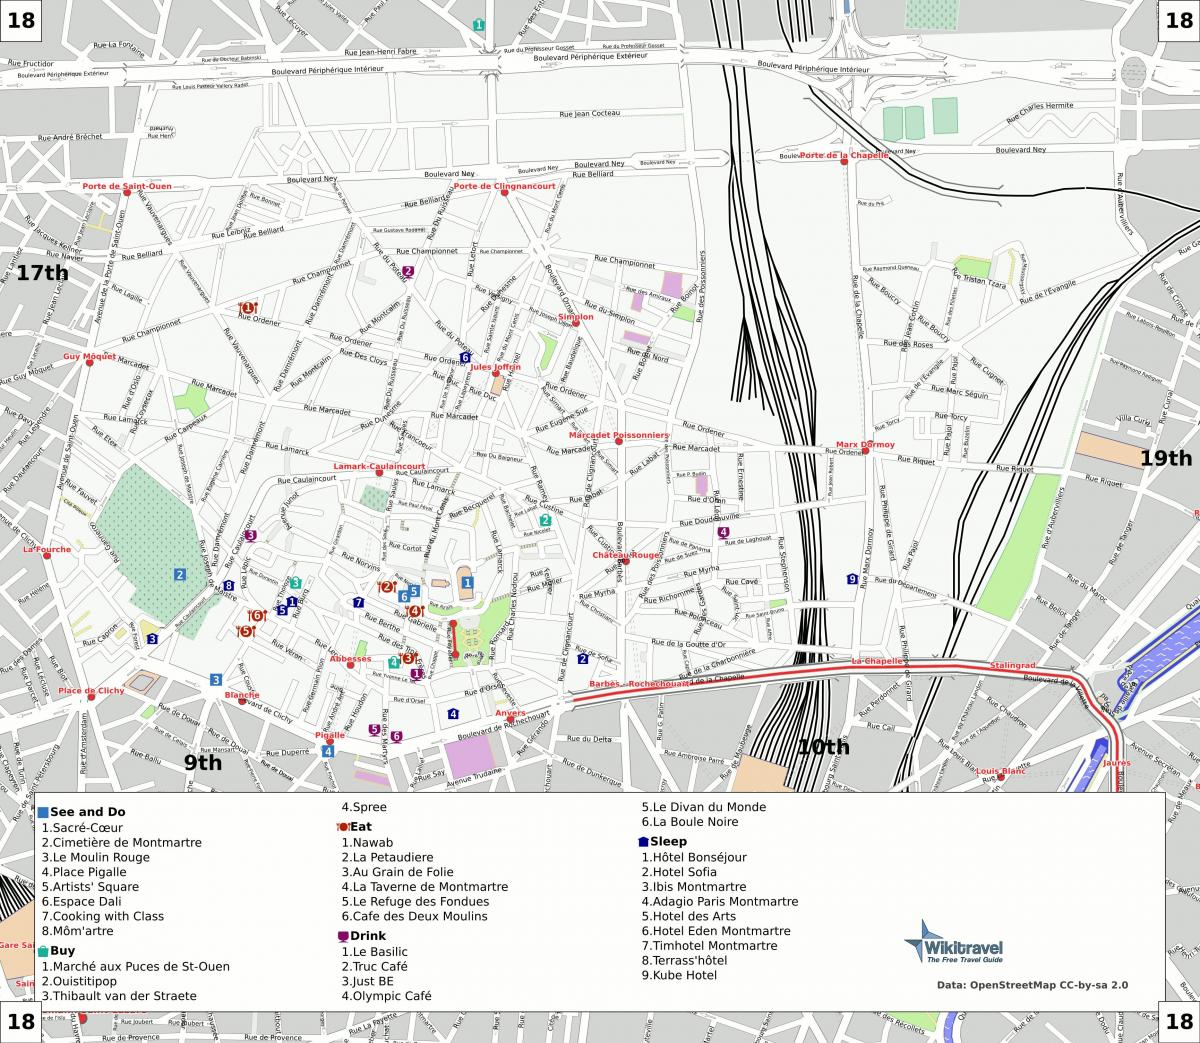 Peta dari arondisemen ke-18 dari Paris